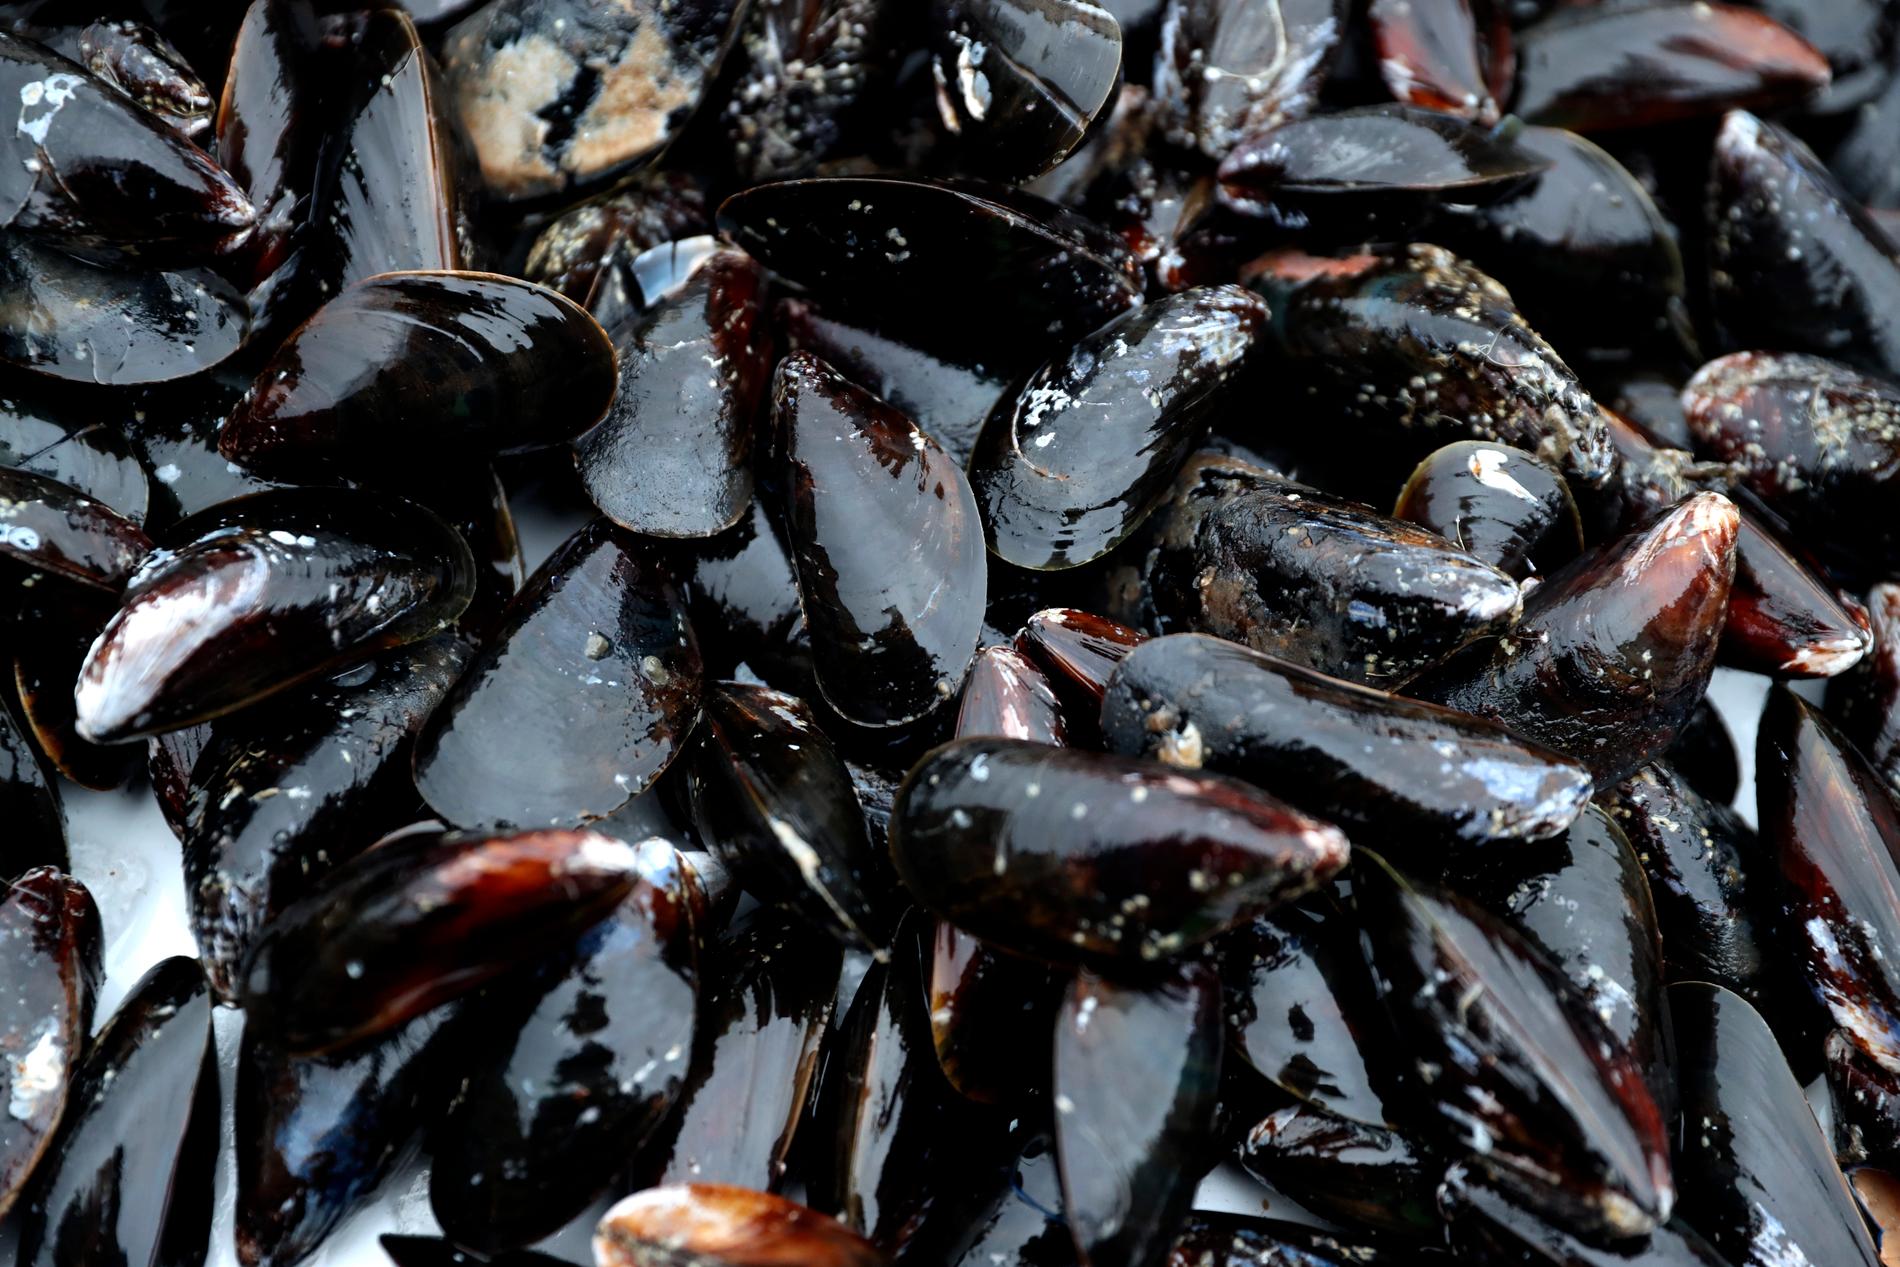 Musselodlingar inhägnades med nät där sjöfåglar fastnade och dog, enligt åtalet. Arkivbild.